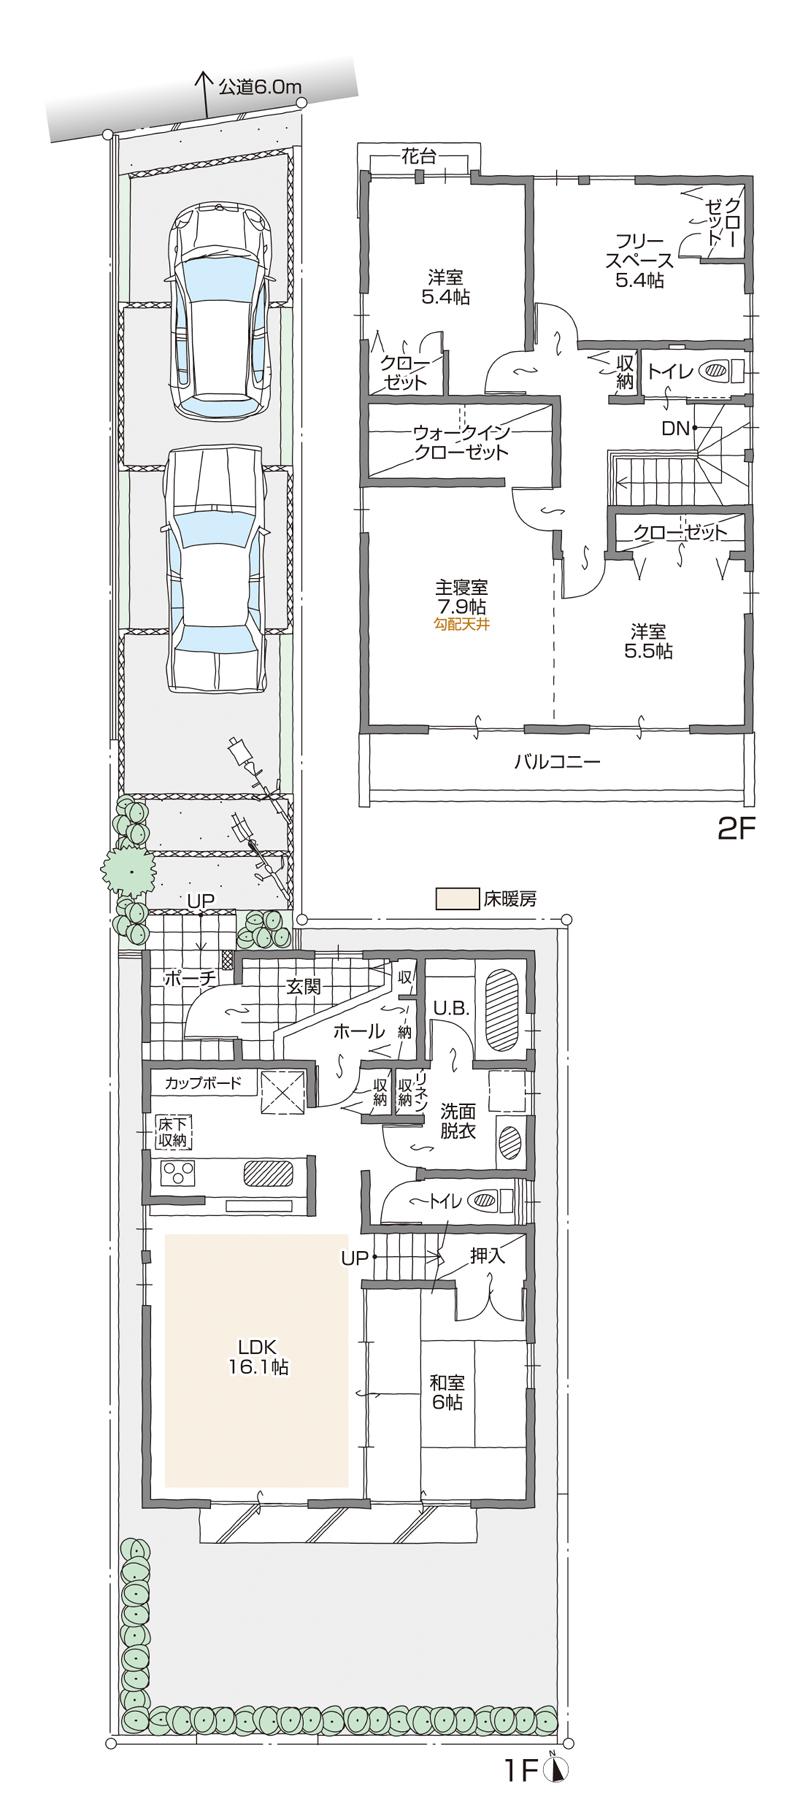 Floor plan. (A Building), Price 27,800,000 yen, 4LDK+2S, Land area 146.51 sq m , Building area 113.18 sq m